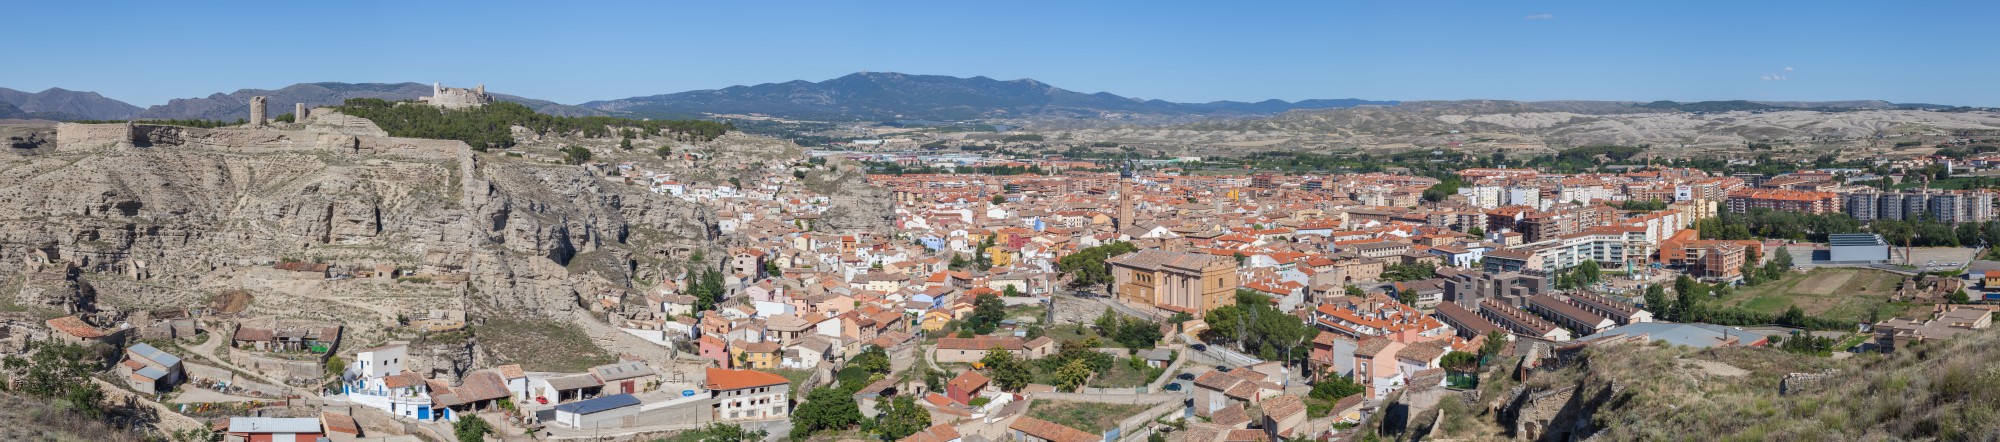 Vista panorámica de Calatayud desde San Roque, Aragón, España, 2014-07-12, DD 22-25 PAN